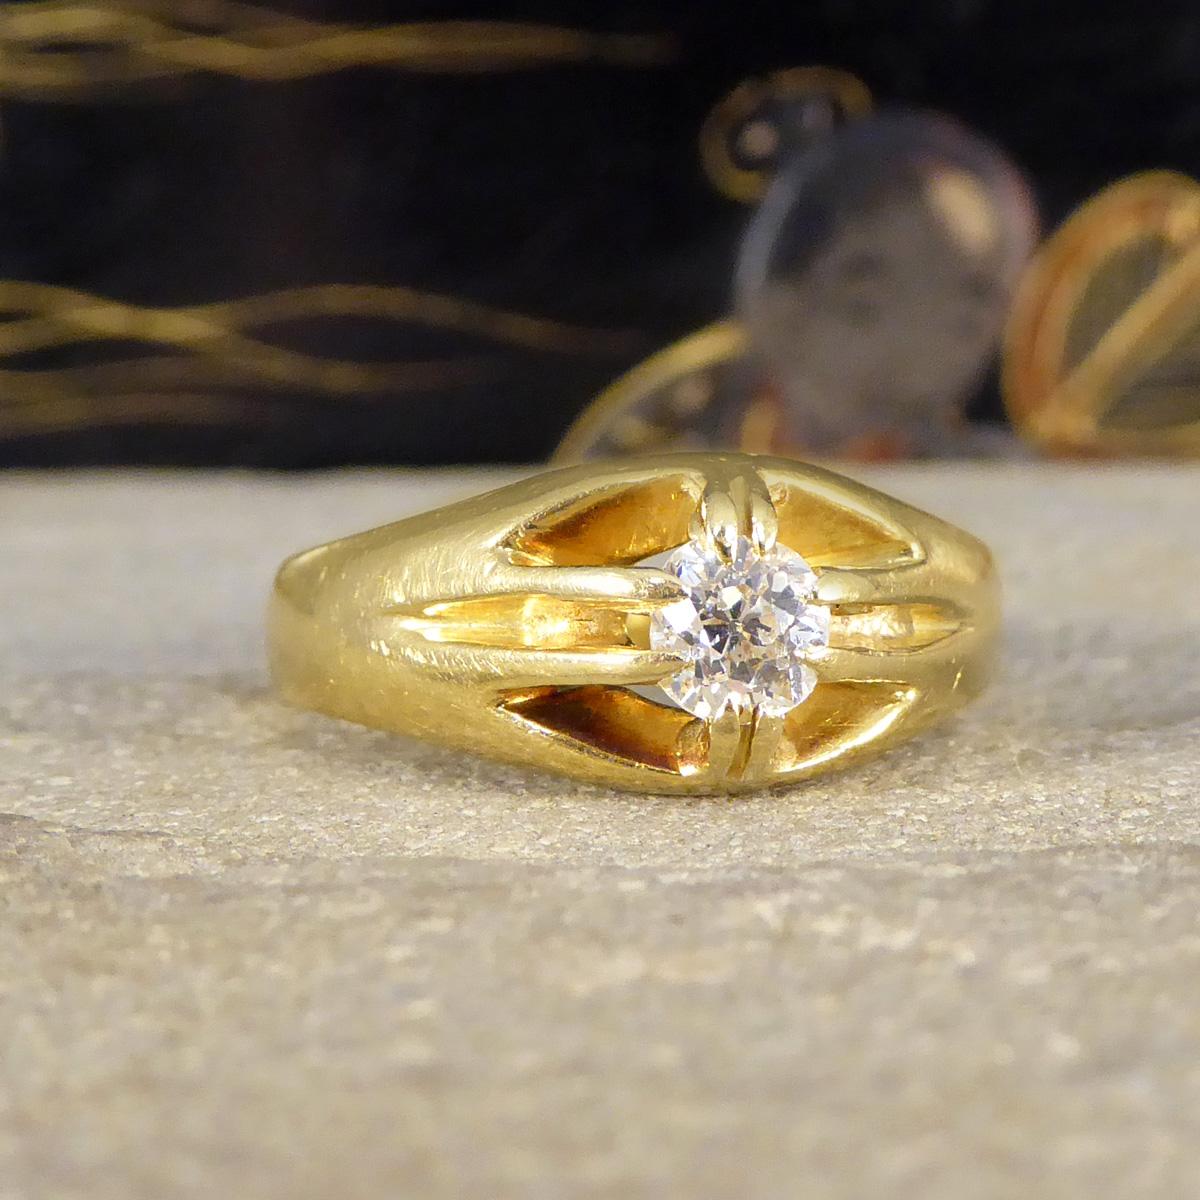 Tauchen Sie ein in die Romantik der Vergangenheit mit unserem spätviktorianischen Belcher-Set-Ring mit Diamant im Kissenschliff. Dieses exquisite Stück ist eine schöne Darstellung der viktorianischen Ära Handwerkskunst, in luxuriösen 18ct Gelbgold